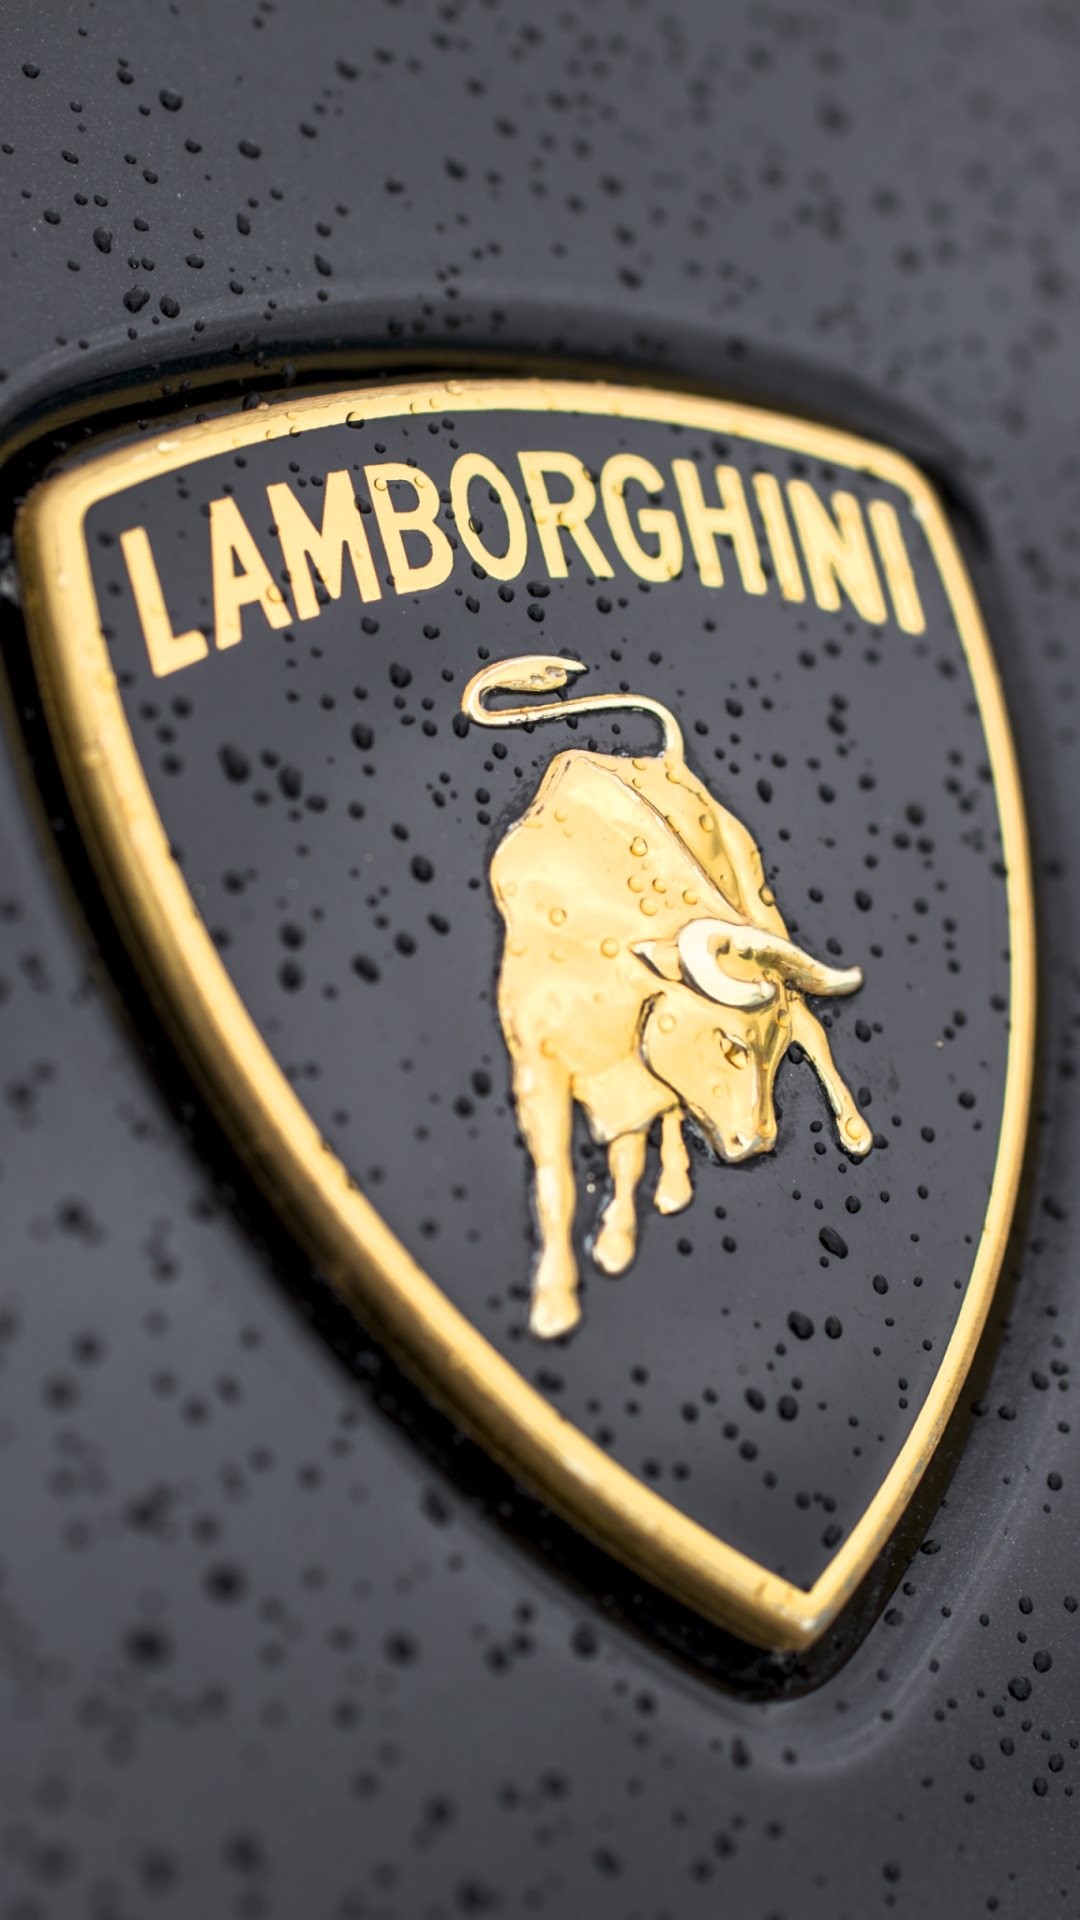 Lamborghini Logo Close-up iPhone 6 wallpaper